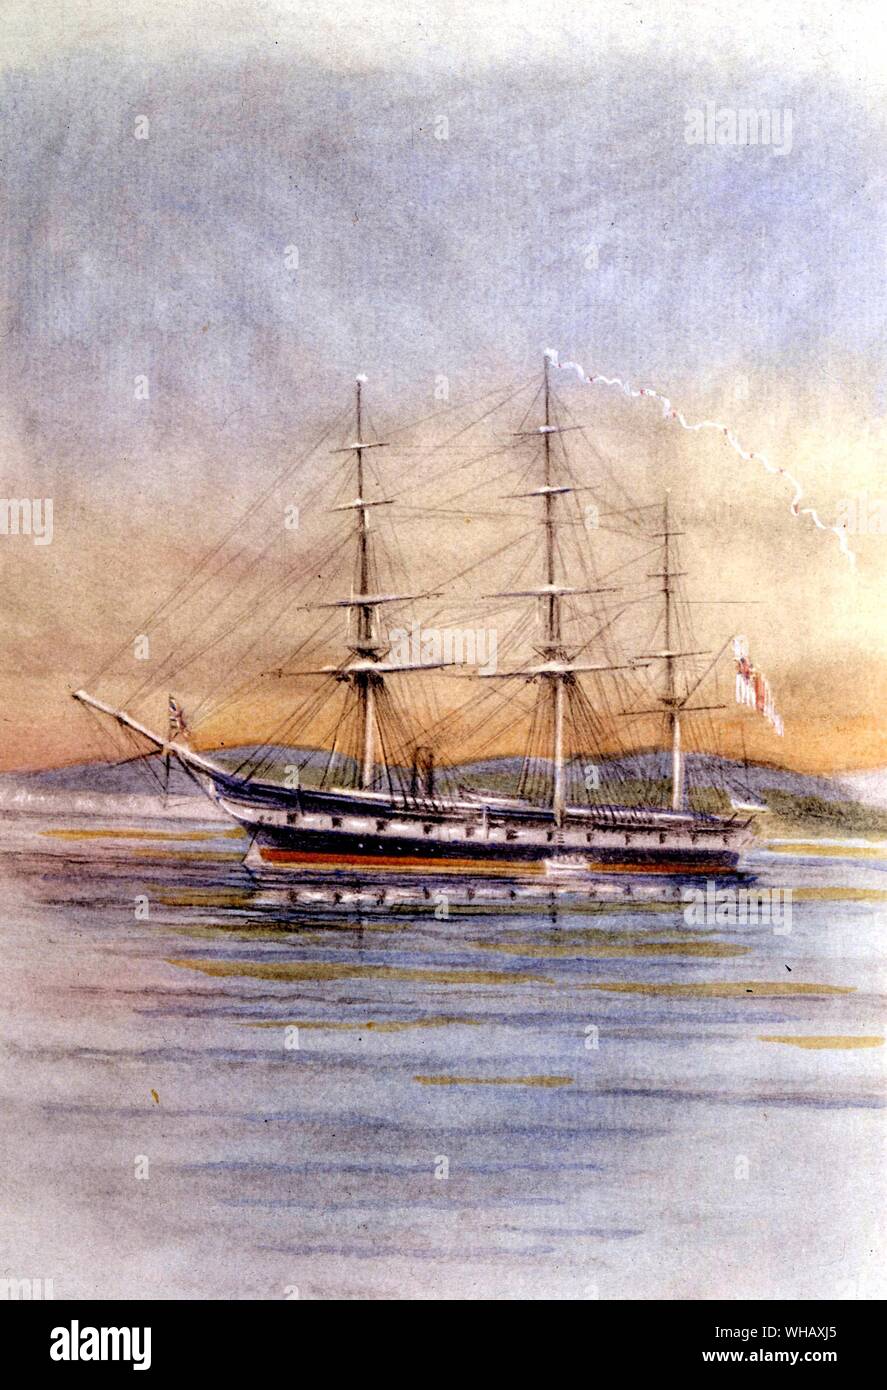 Le Challenger en mer. . Le cinquième HMS Challenger (1858) a été lancé d'un bain à vapeur, la marine britannique assistée de corvette en bois 22306 tonnes. Le capitaine George Nares, était aux commandes avec 243 officiers, scientifiques et l'équipage de la marine lorsqu'il embarque sur son 68 890 milles marins (127 670 km) voyage. Le Challenger est remarquable pour l'exécution de la première expédition de recherche marine et est sans parallèle dans l'histoire de la recherche scientifique. Le navire a également été le premier navire à vapeur à traverser le cercle antarctique, bien que ce n'était pas l'objet du voyage. . Banque D'Images